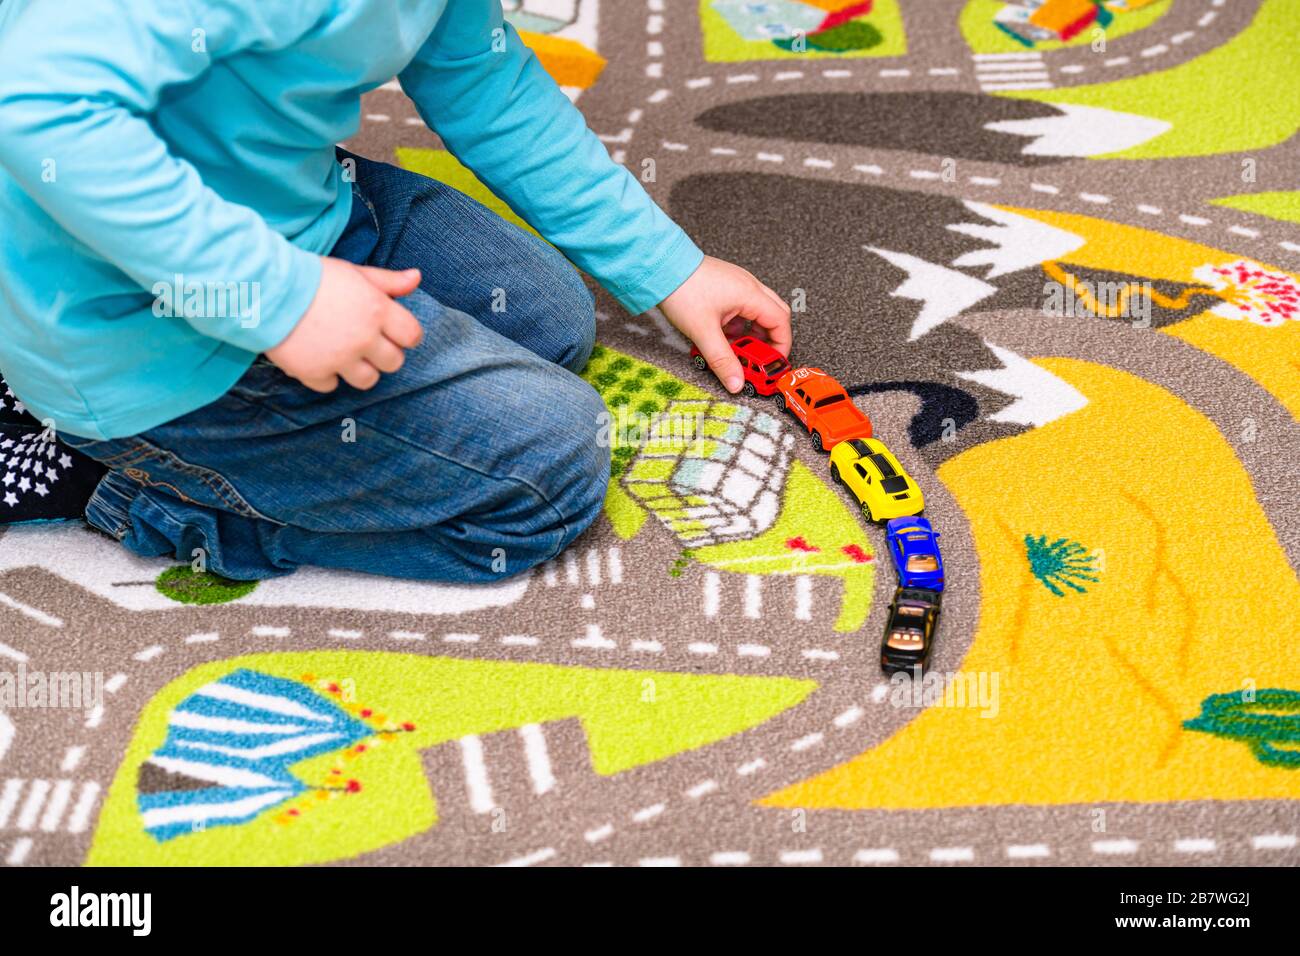 Ragazzo di cinque anni che gioca e allineano le auto giocattolo su un tappetino da gioco con le strade. Il ragazzo è vestito di jeans blu e di un giocattolo rosso in mano. Foto Stock